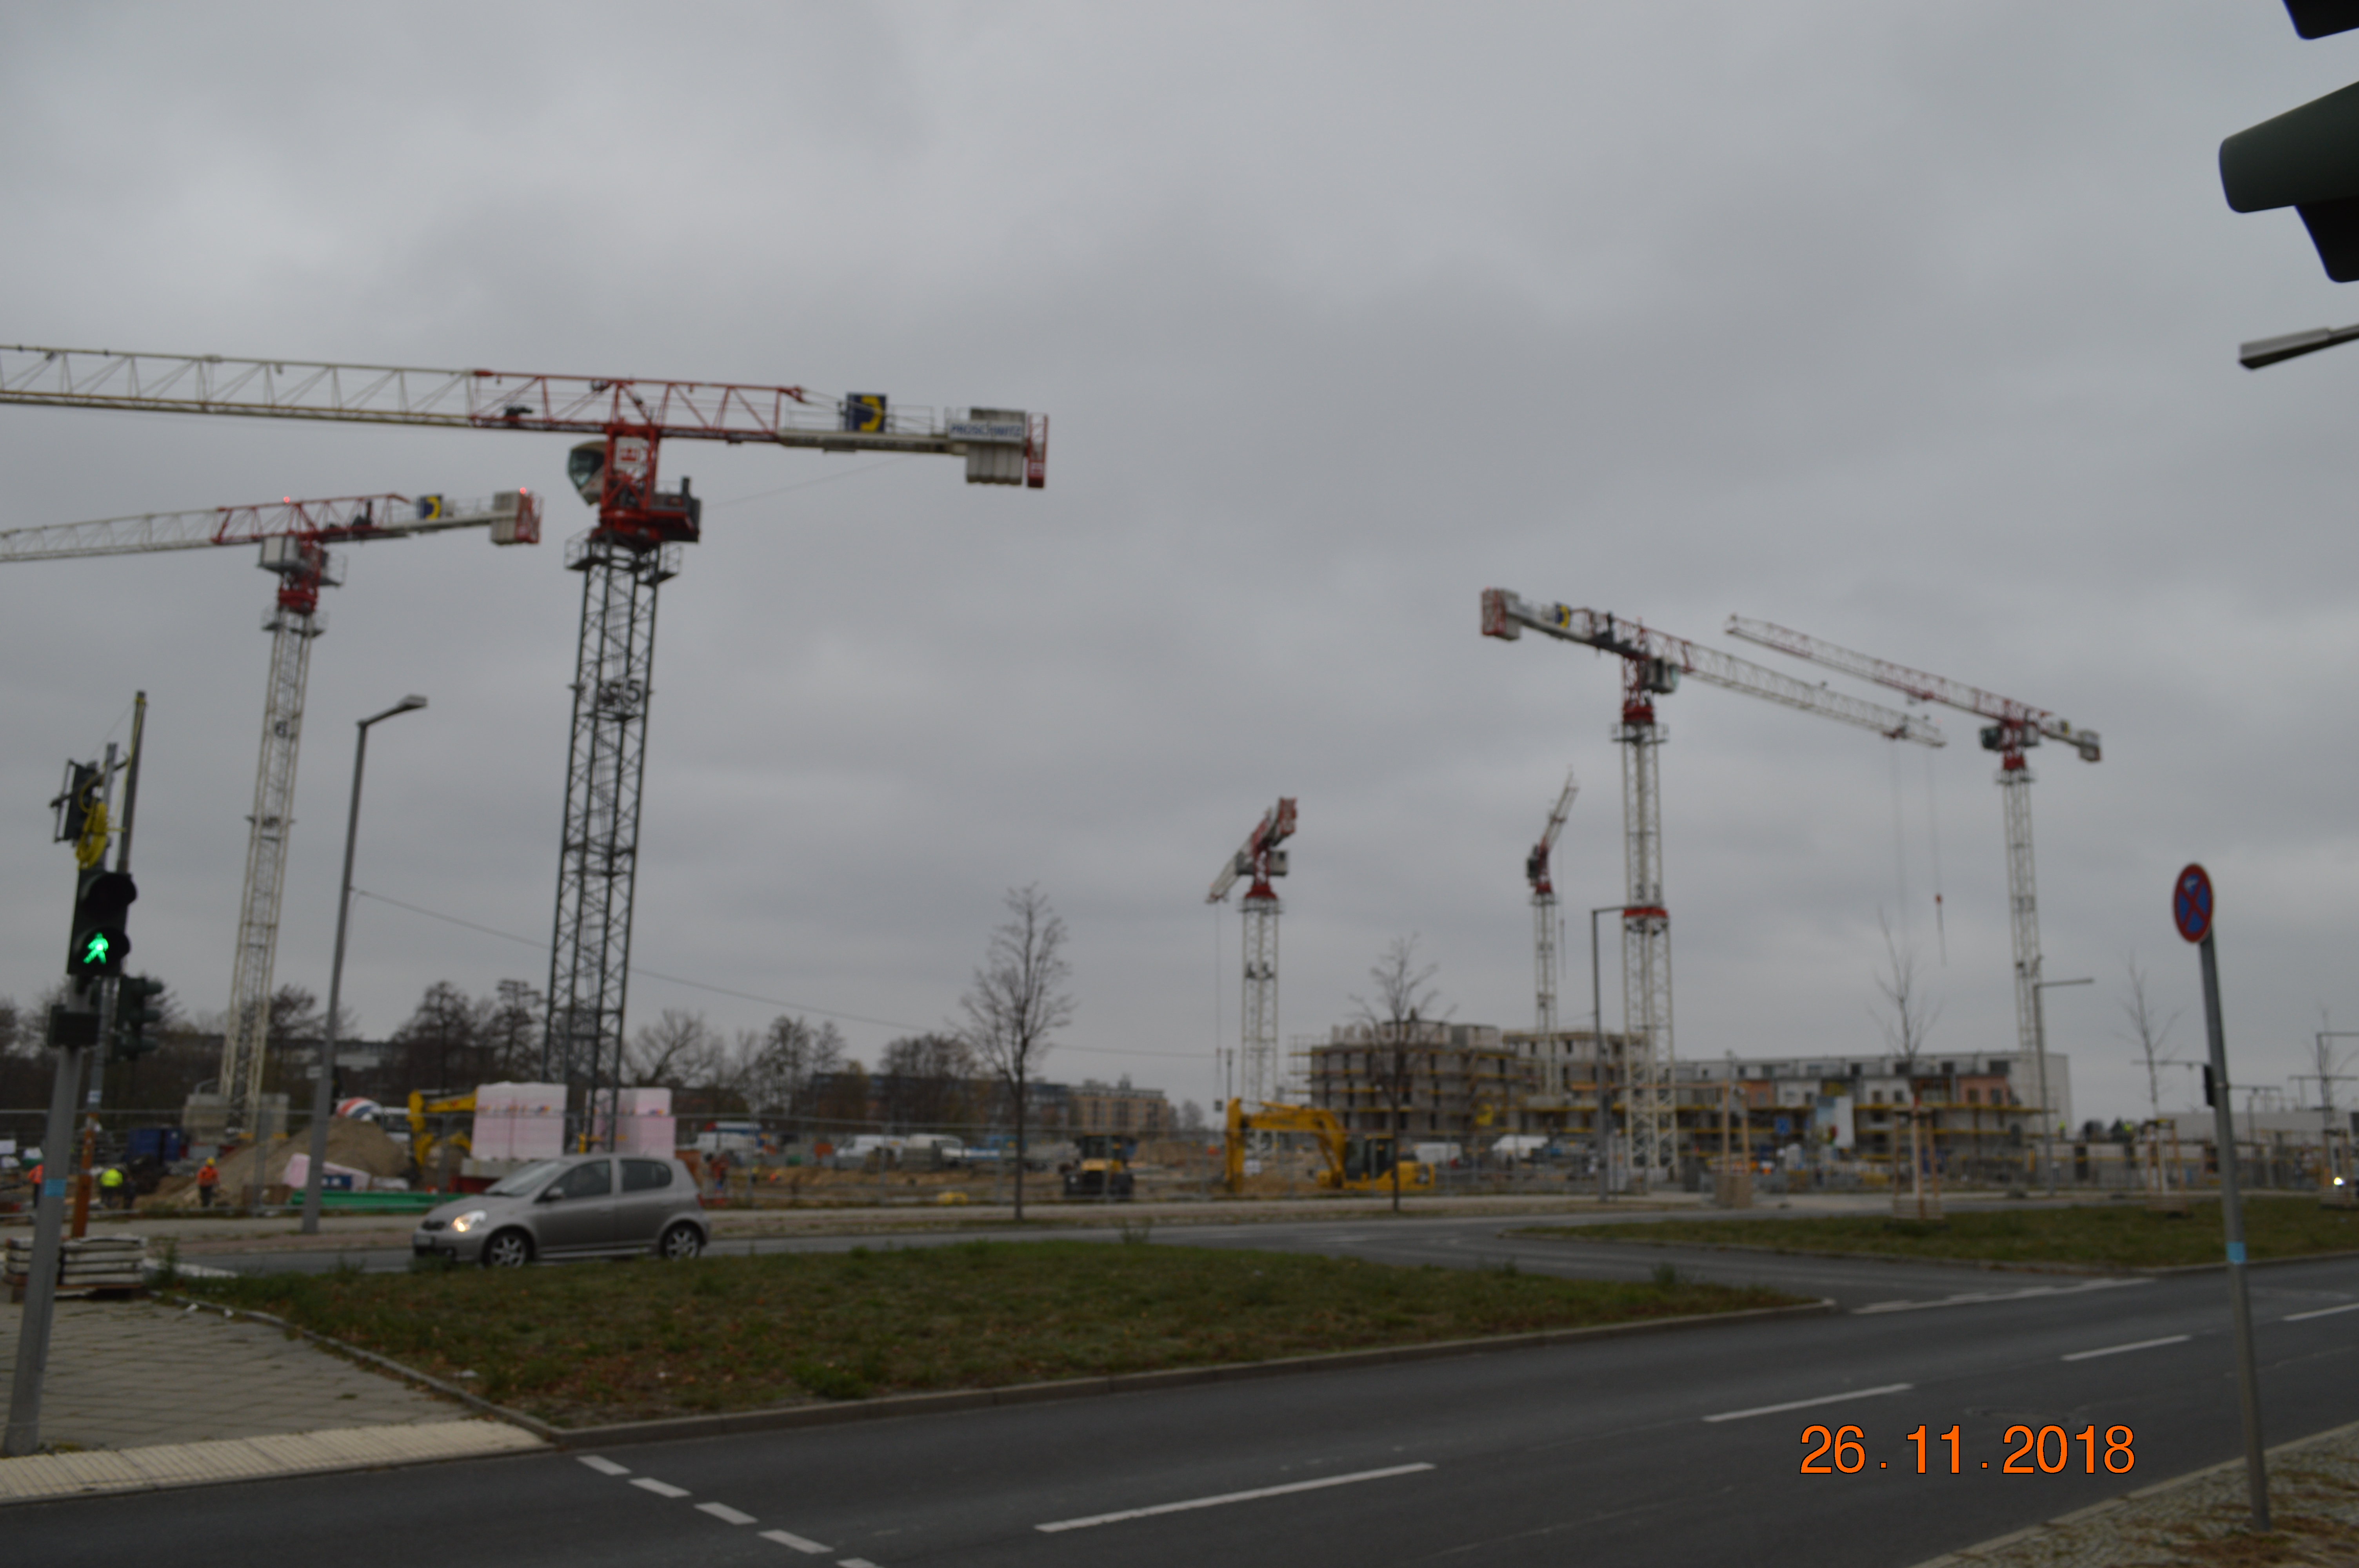 Baustelle-Berlin-Baukontrast-2018-4